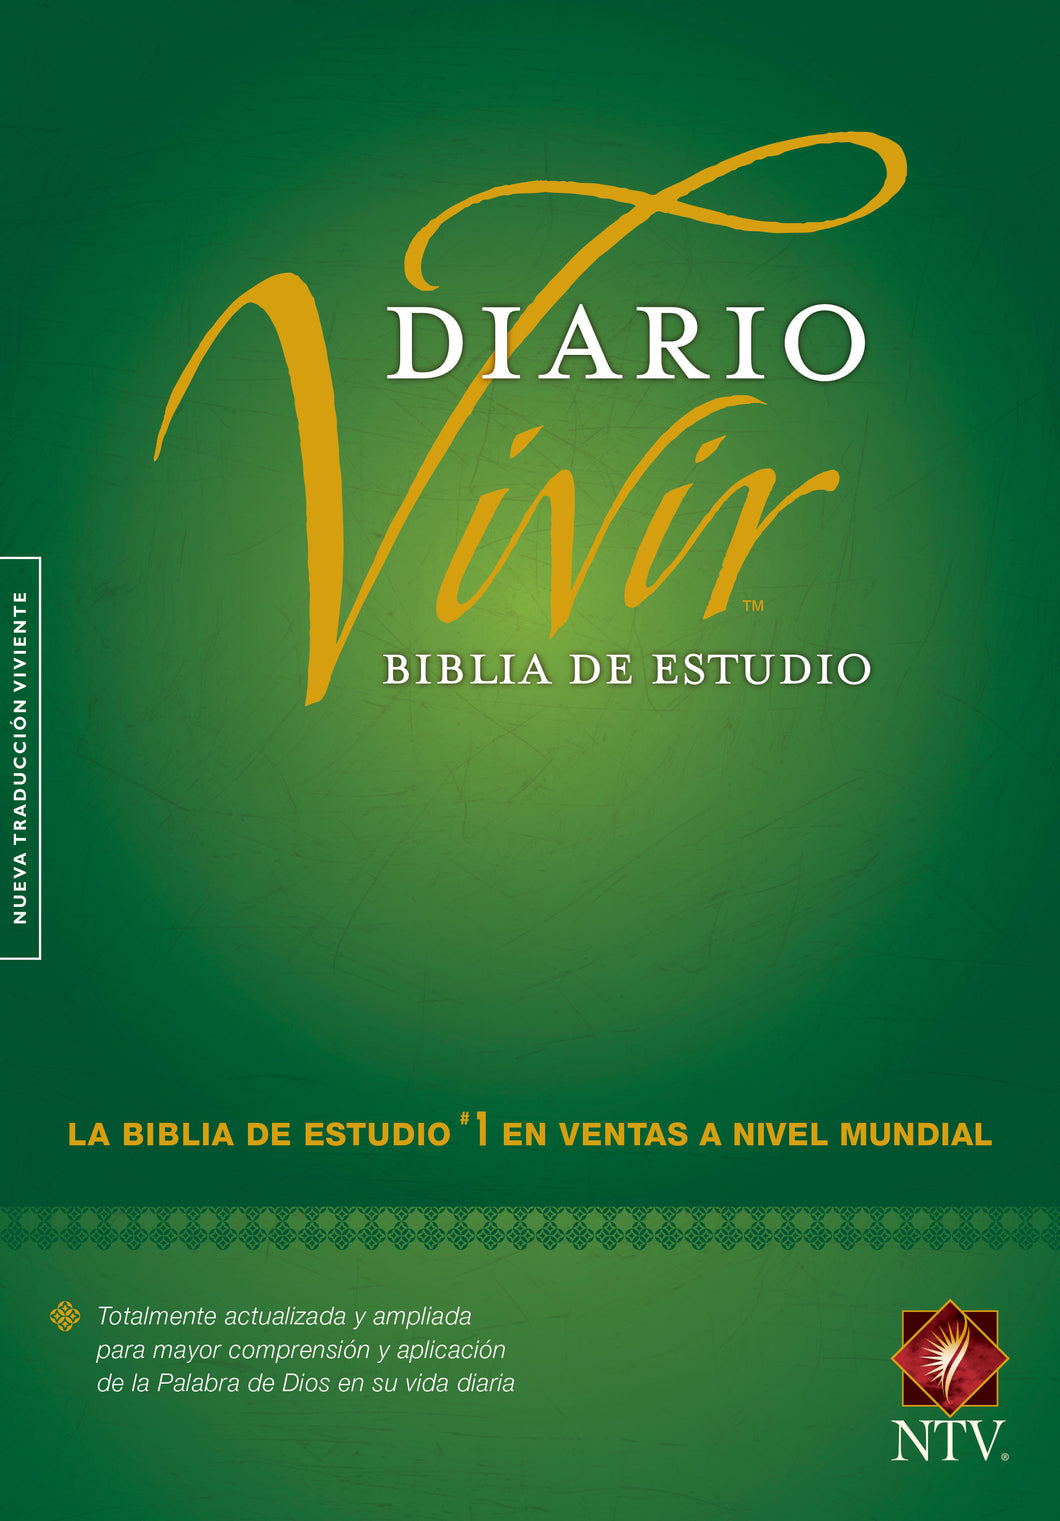 Biblia NTV - de Estudio del Diario Vivir - con Indice - Tapa Dura